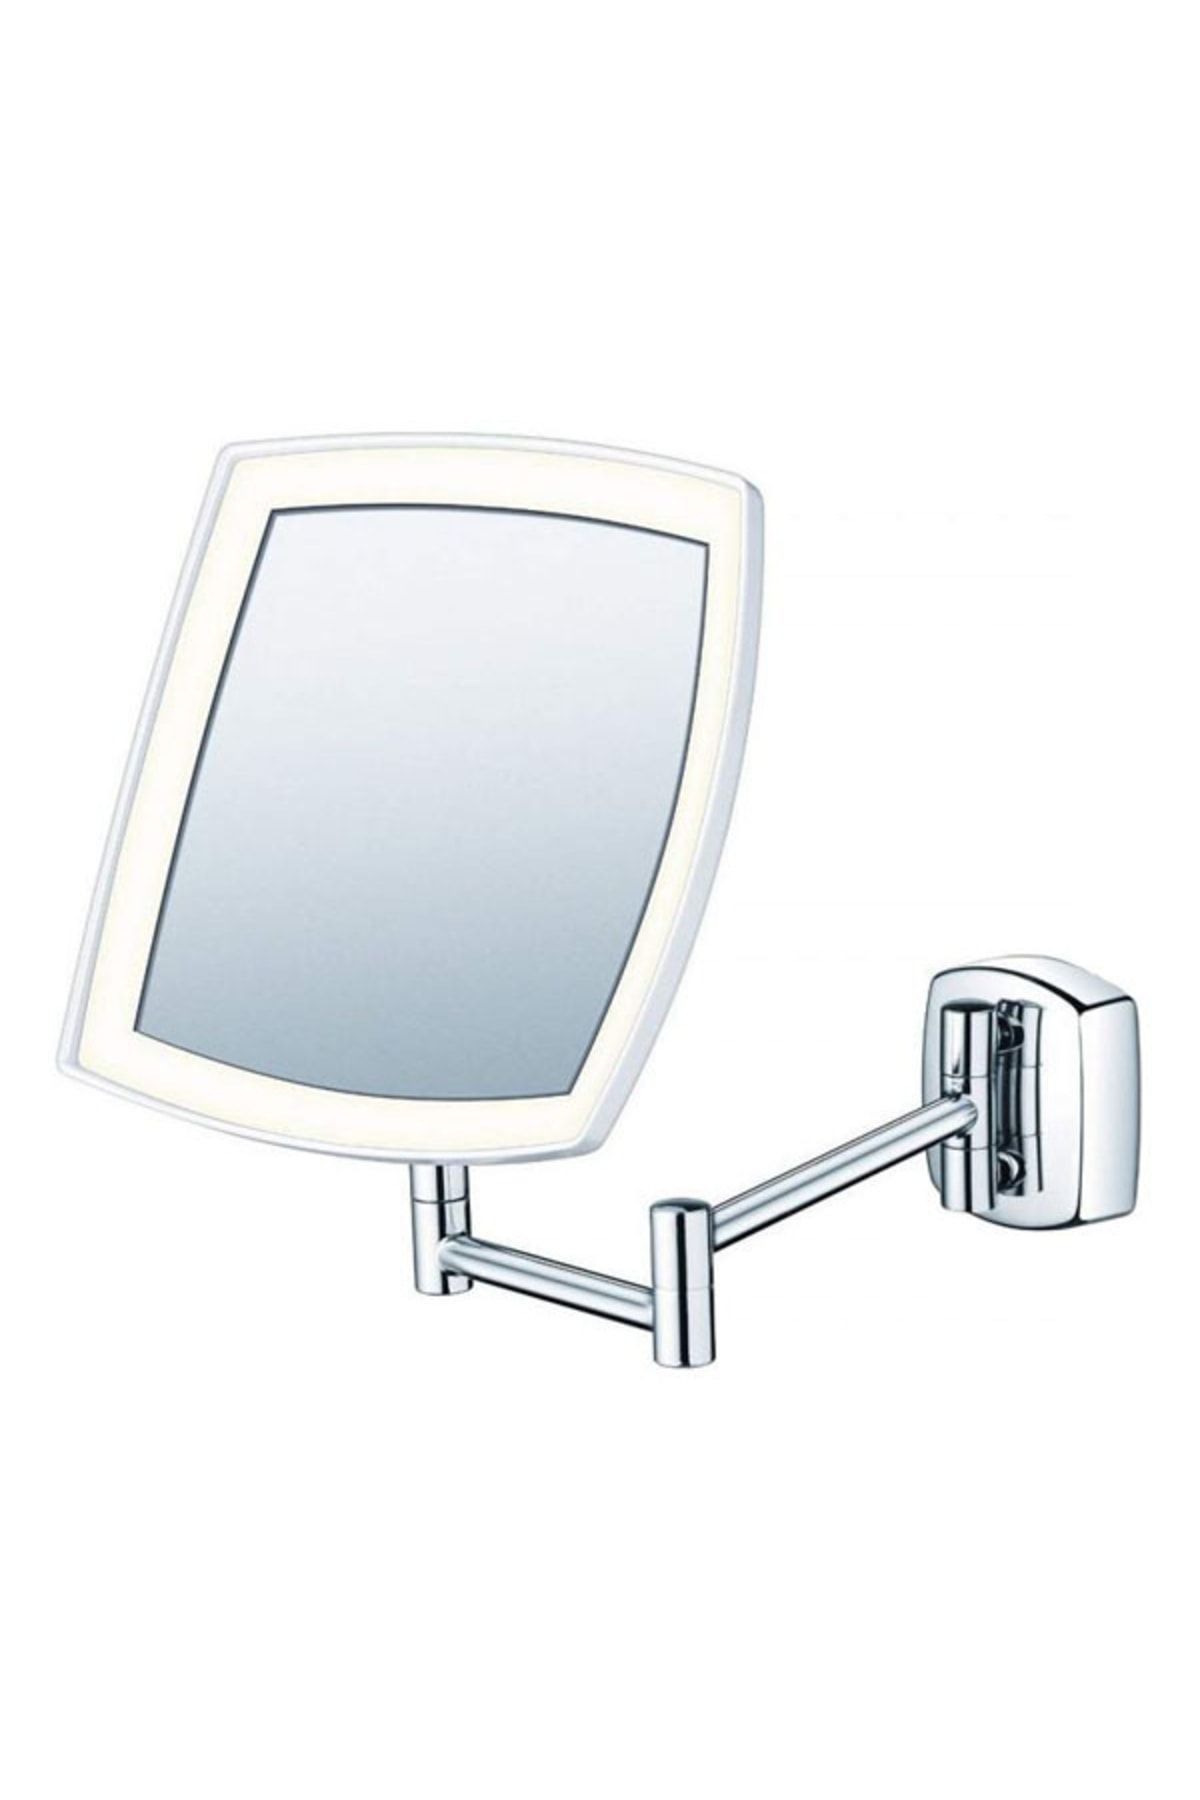 Beurer Bs 89 Işıklı Makyaj Aynası, Kozmetik Kollu Ayna